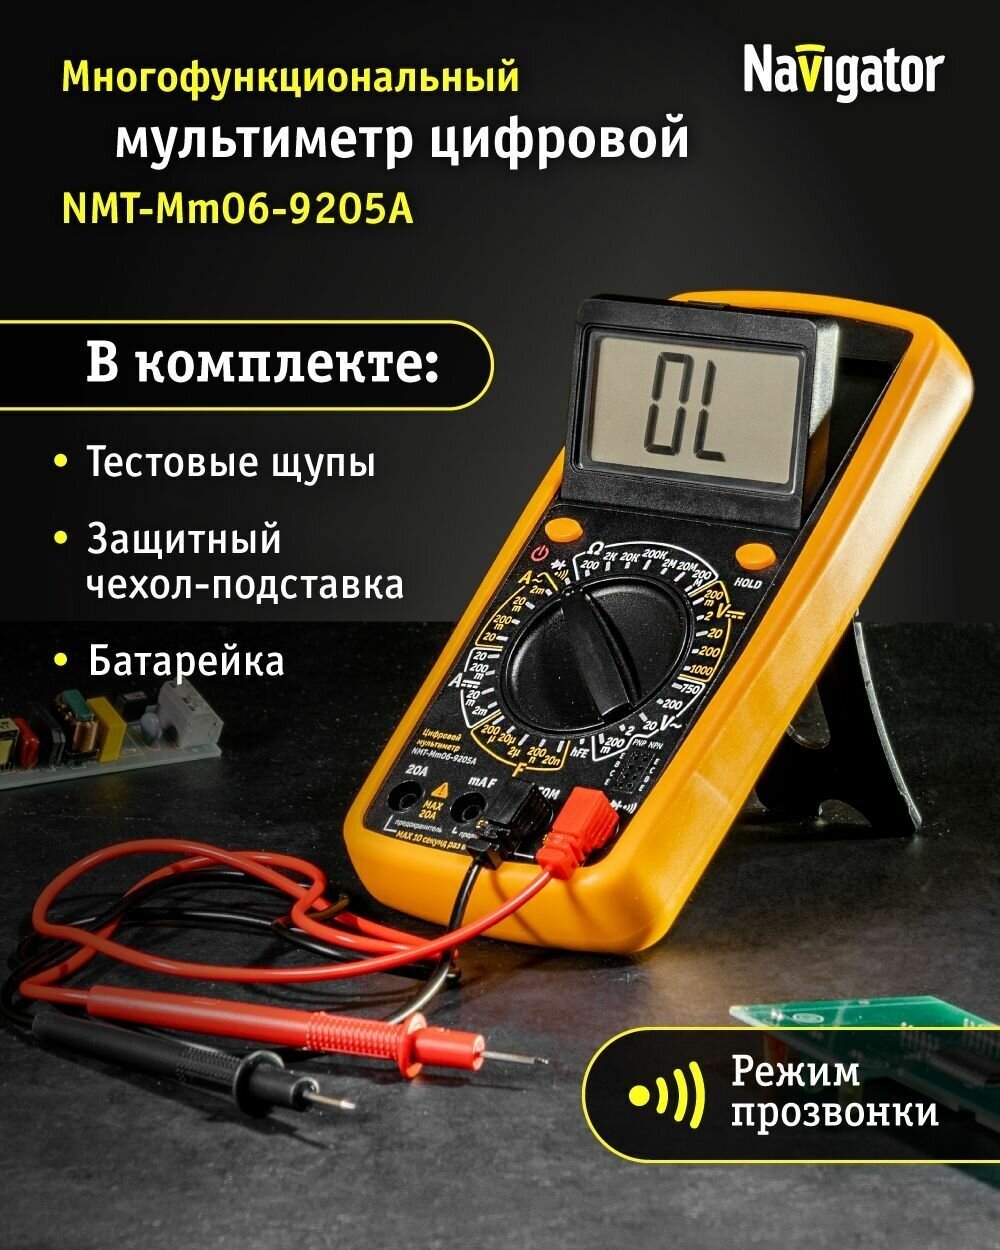 Navigator мультиметр 93 590 nmt-mm06-9205a (9205a) 93590 .